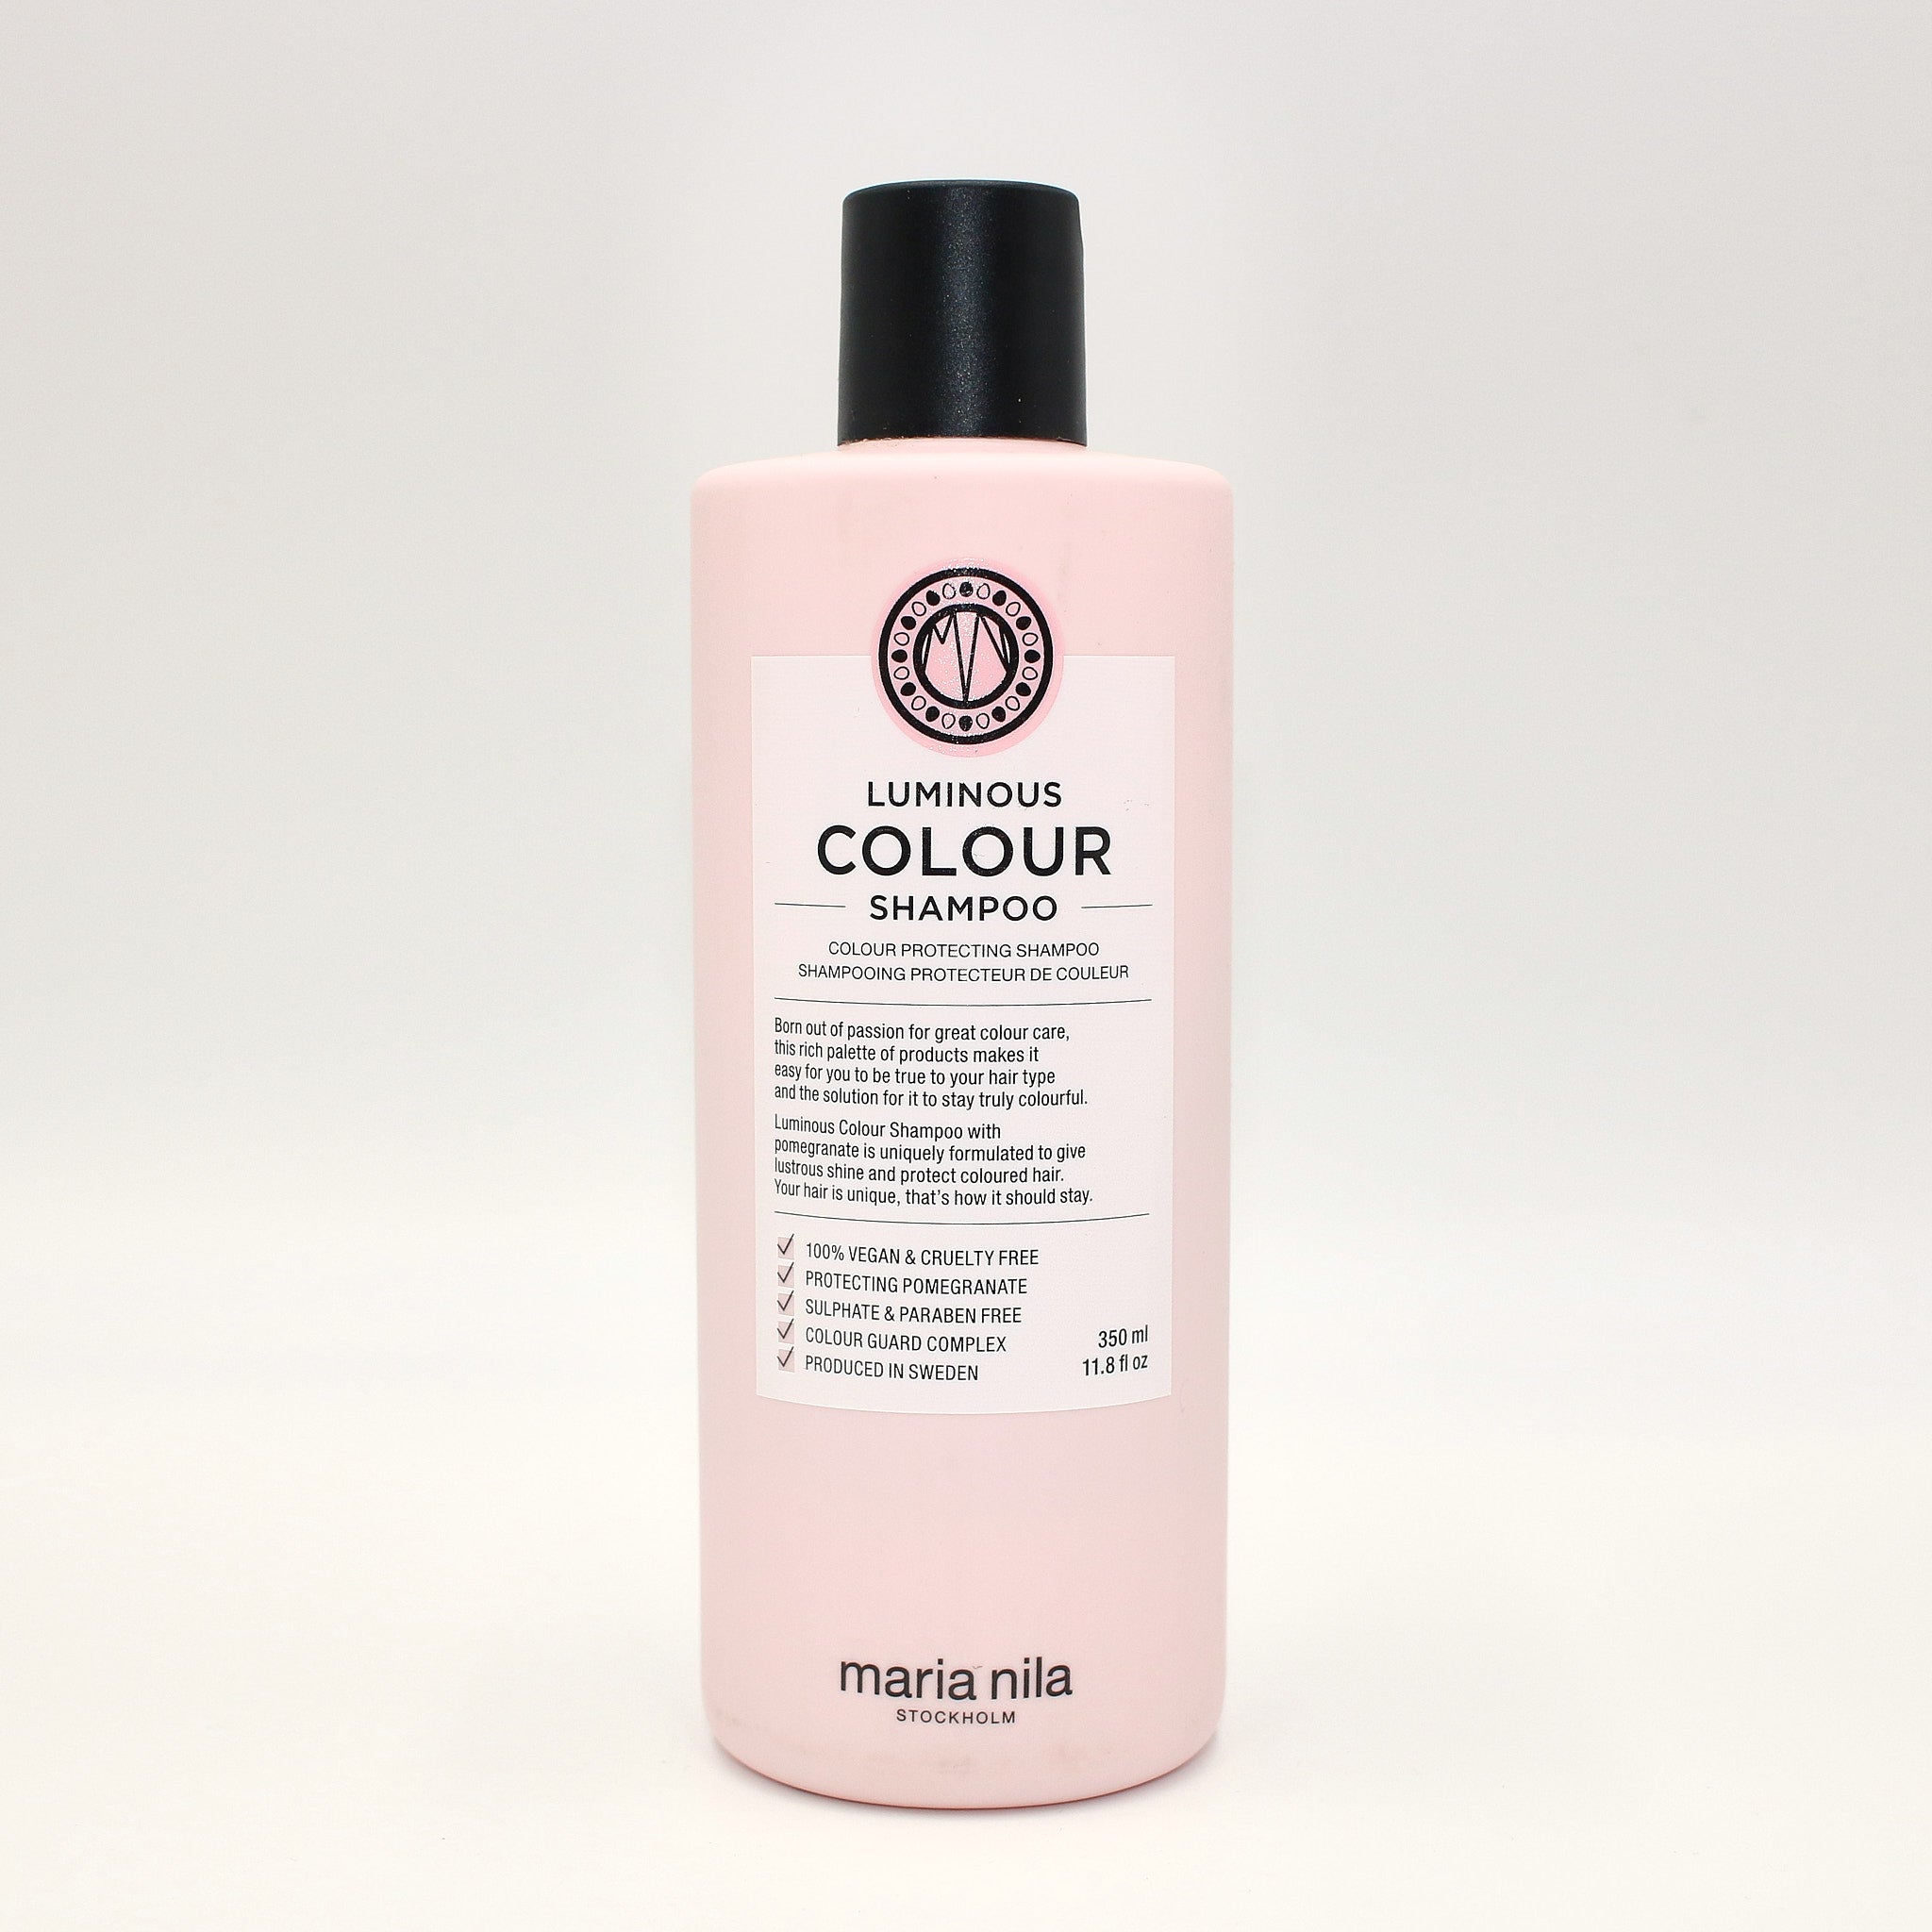 MARIA NILA Luminous Colour Shampoo 11. 8 oz